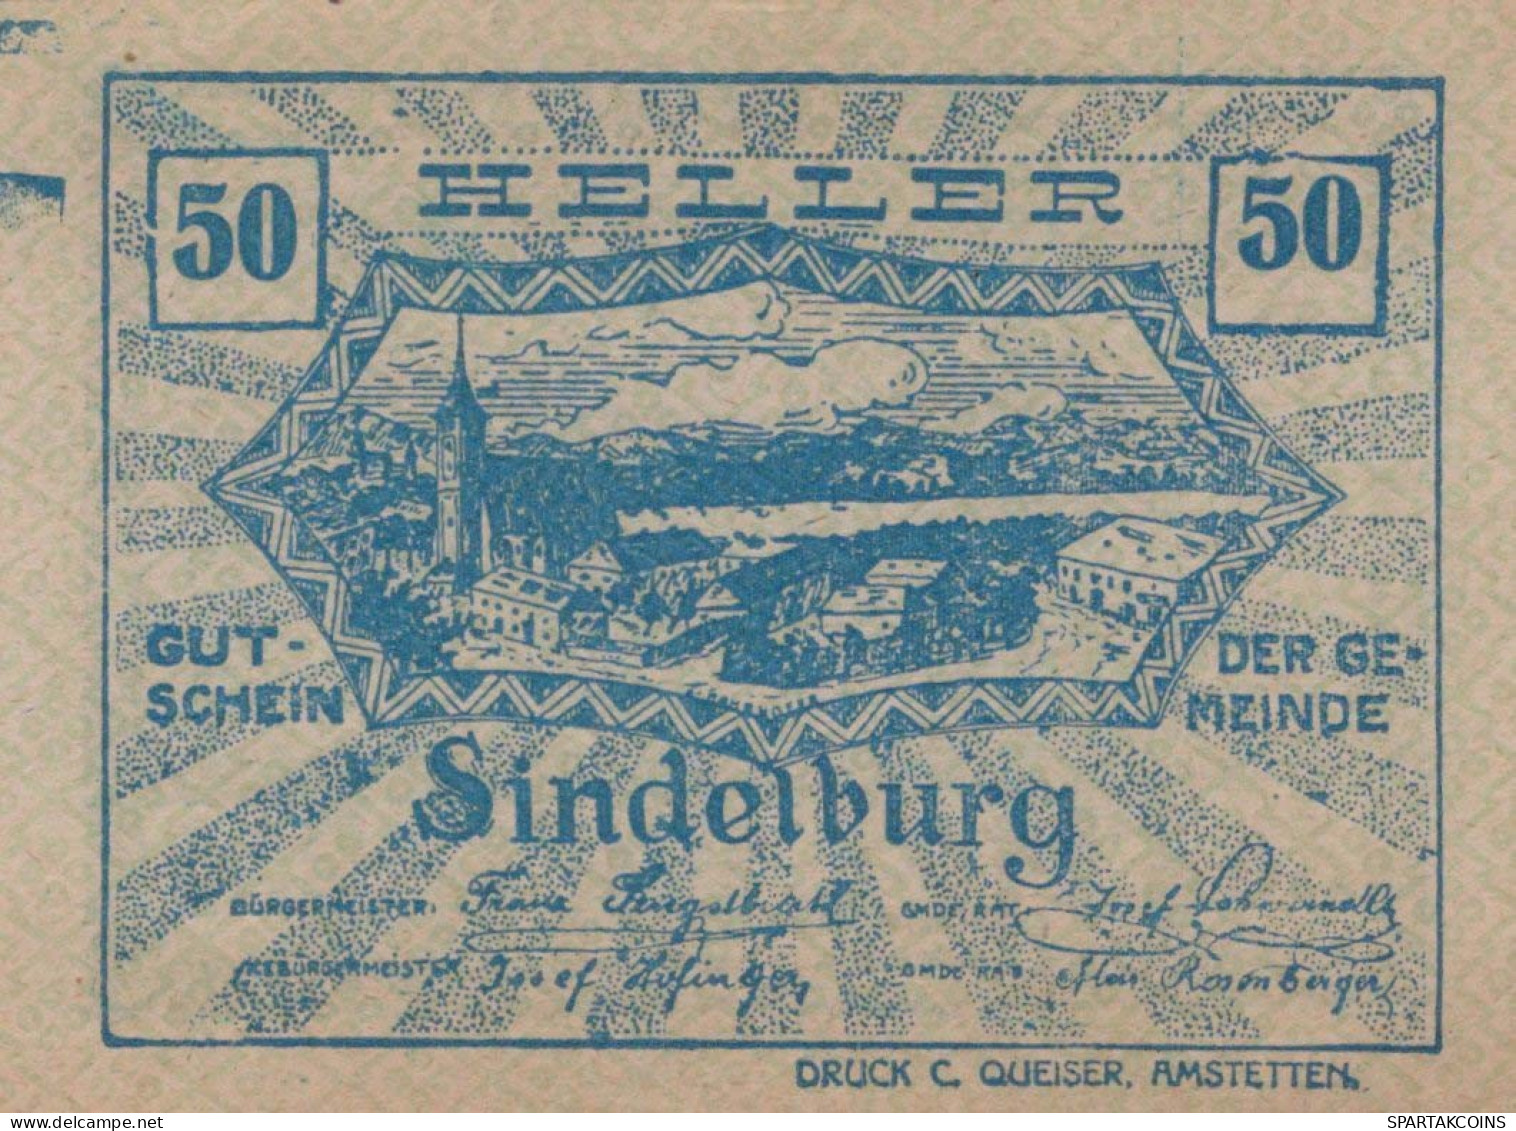 50 HELLER 1920 Stadt Sindelburg Niedrigeren Österreich Notgeld #PI392 - Lokale Ausgaben